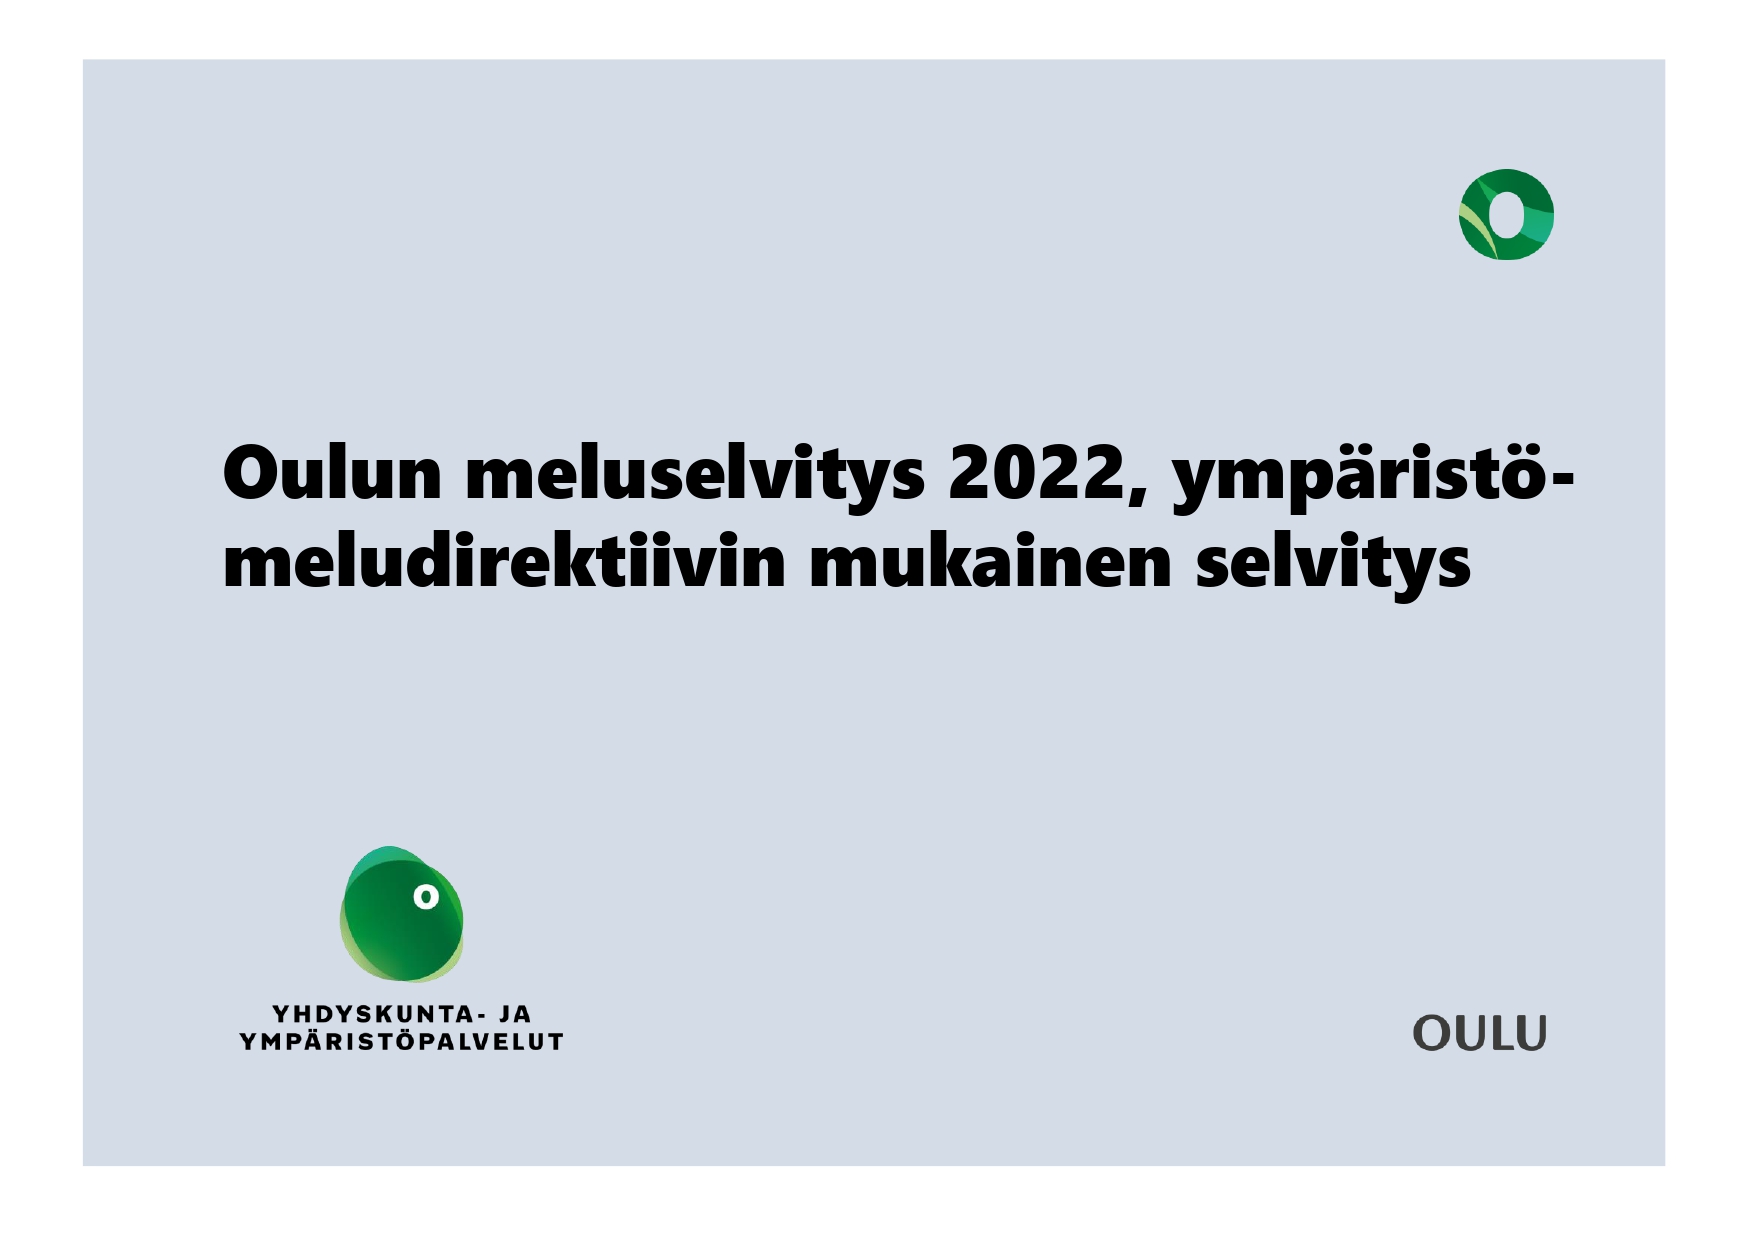 Oulun meluselvityksen 2022 tulokset on julkaistu